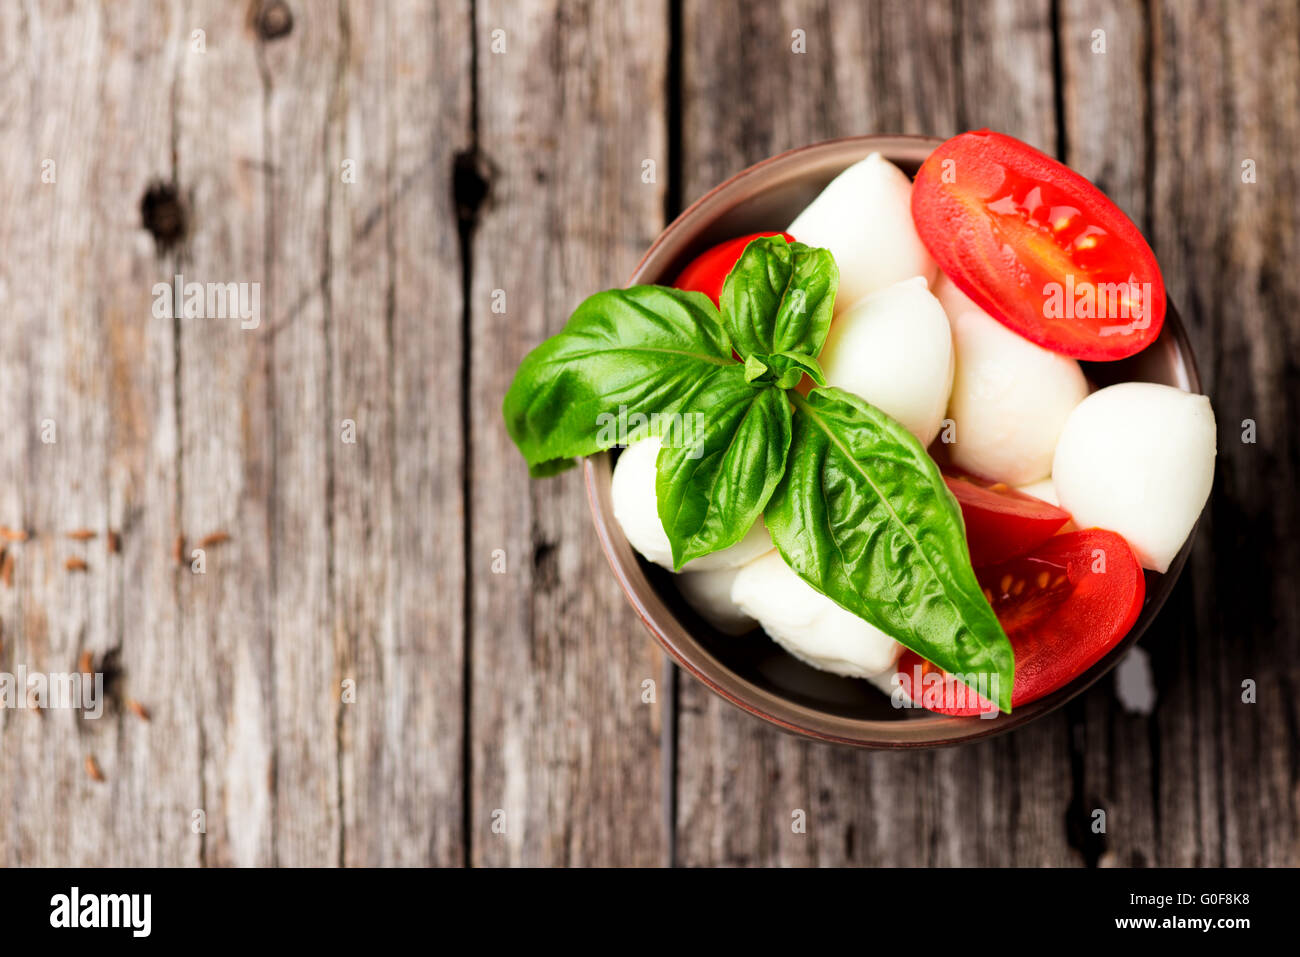 Tomate und Mozzarella mit Basilikum Blätter in Schüssel Stockfotografie -  Alamy